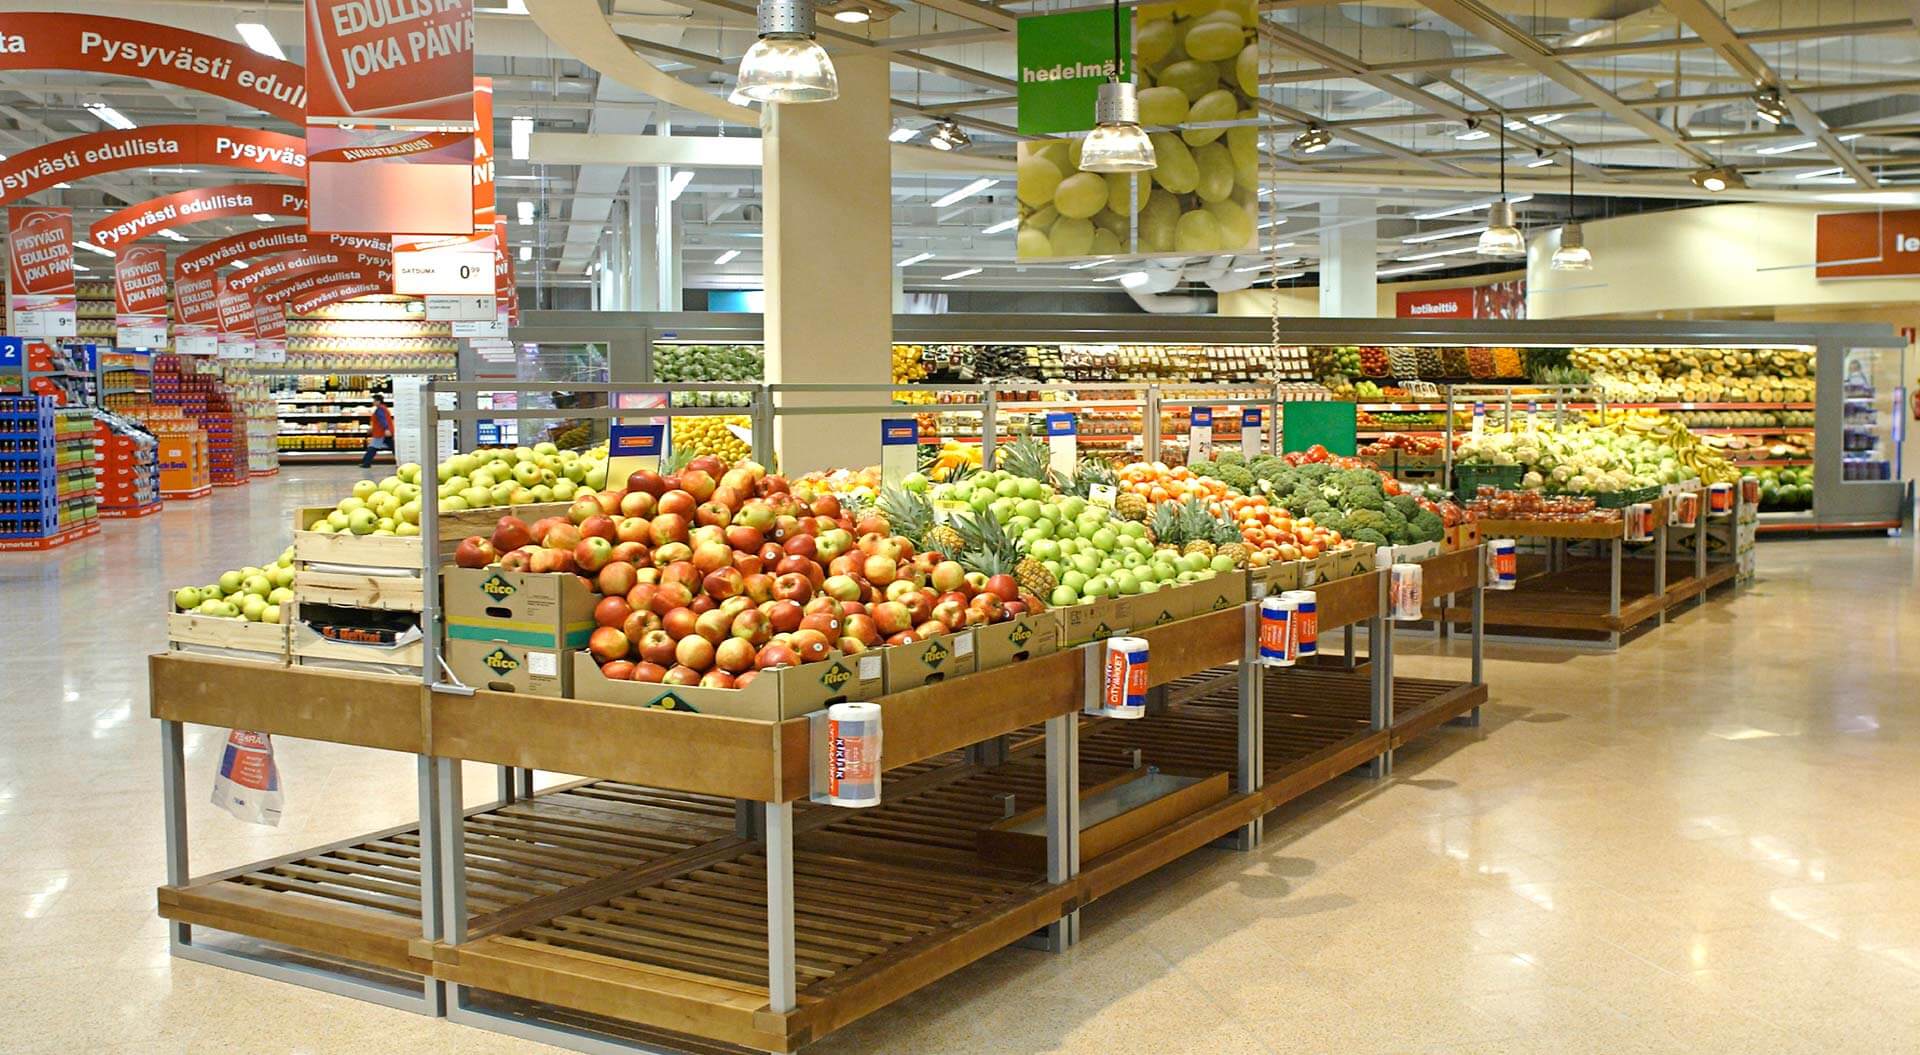 K CityMarket hypermarket Finland, interior store design fresh friut and vegetabes